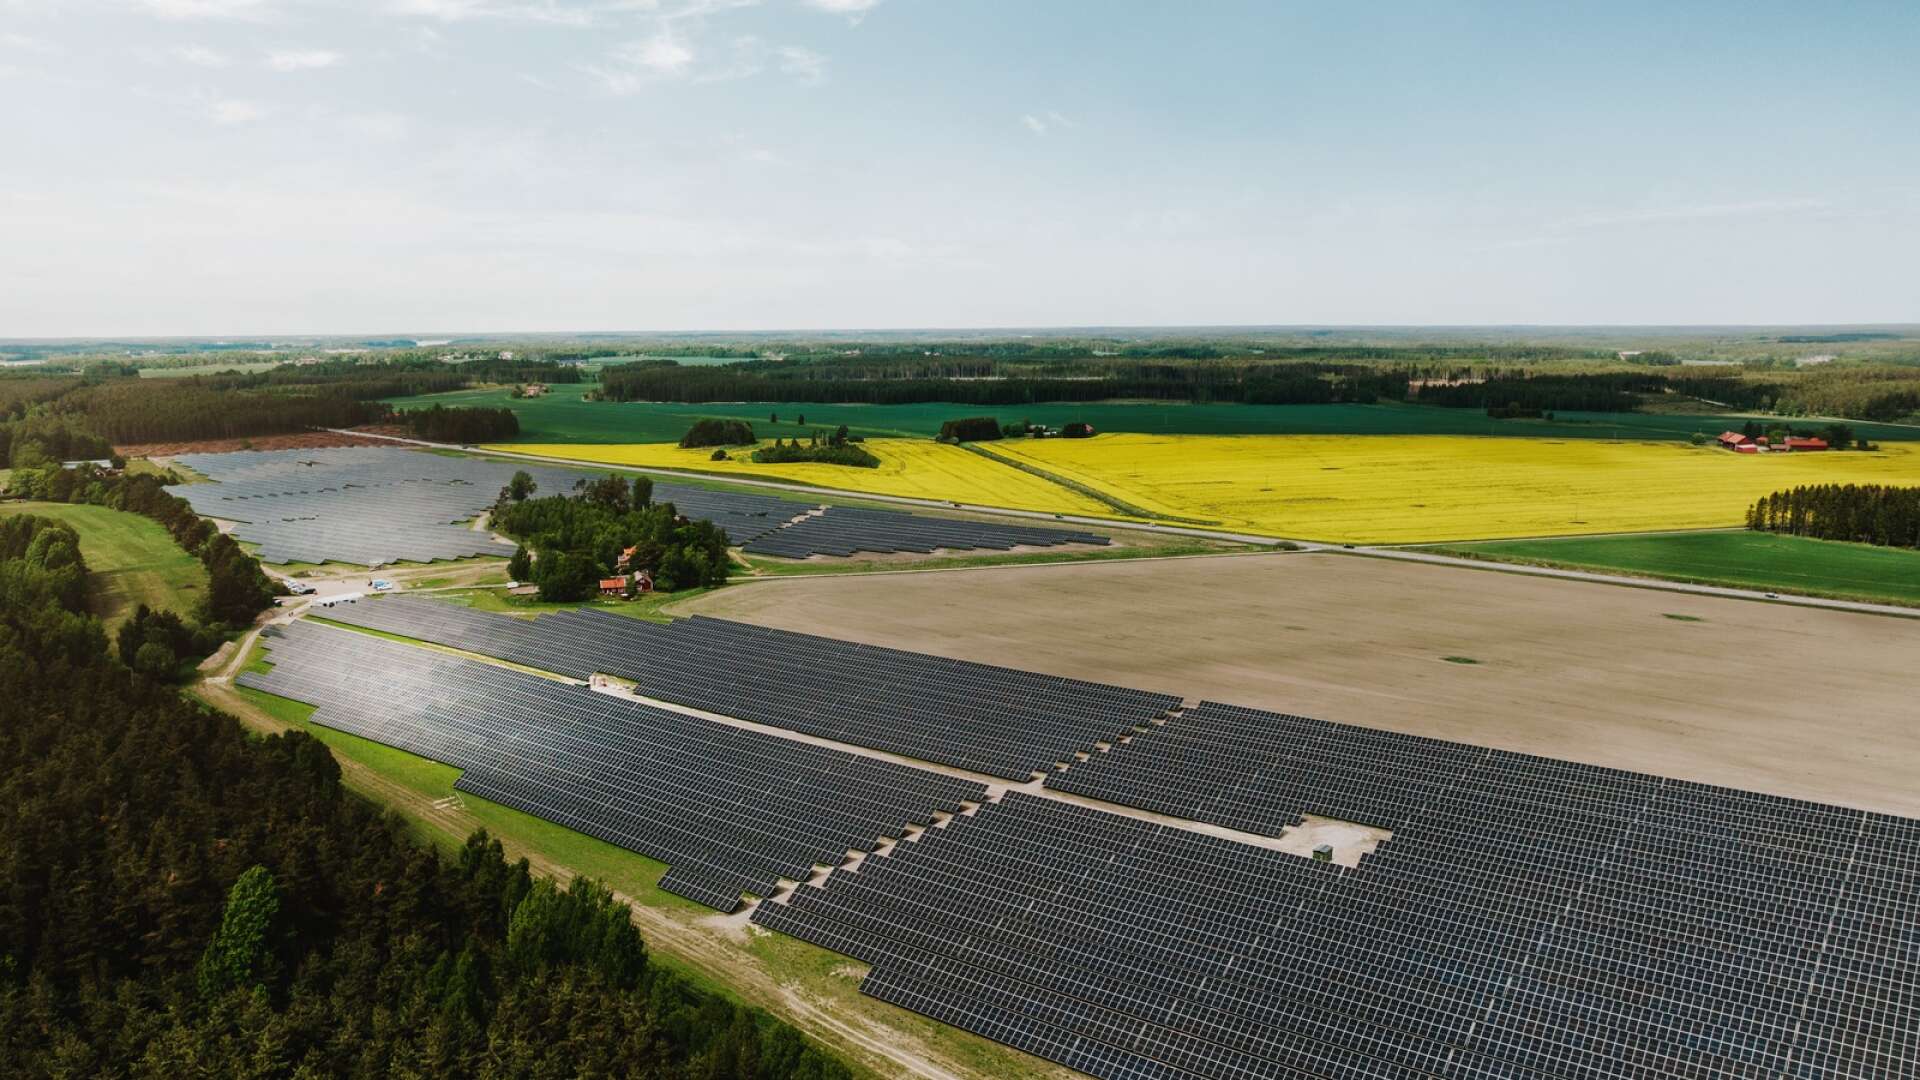 Just nu ansöks det om många solcellsparker i Sverige. Företaget bakom ett projekt i Hasslösa kommer att överklaga länsstyrelsens beslut om nej till solceller på åkermark.